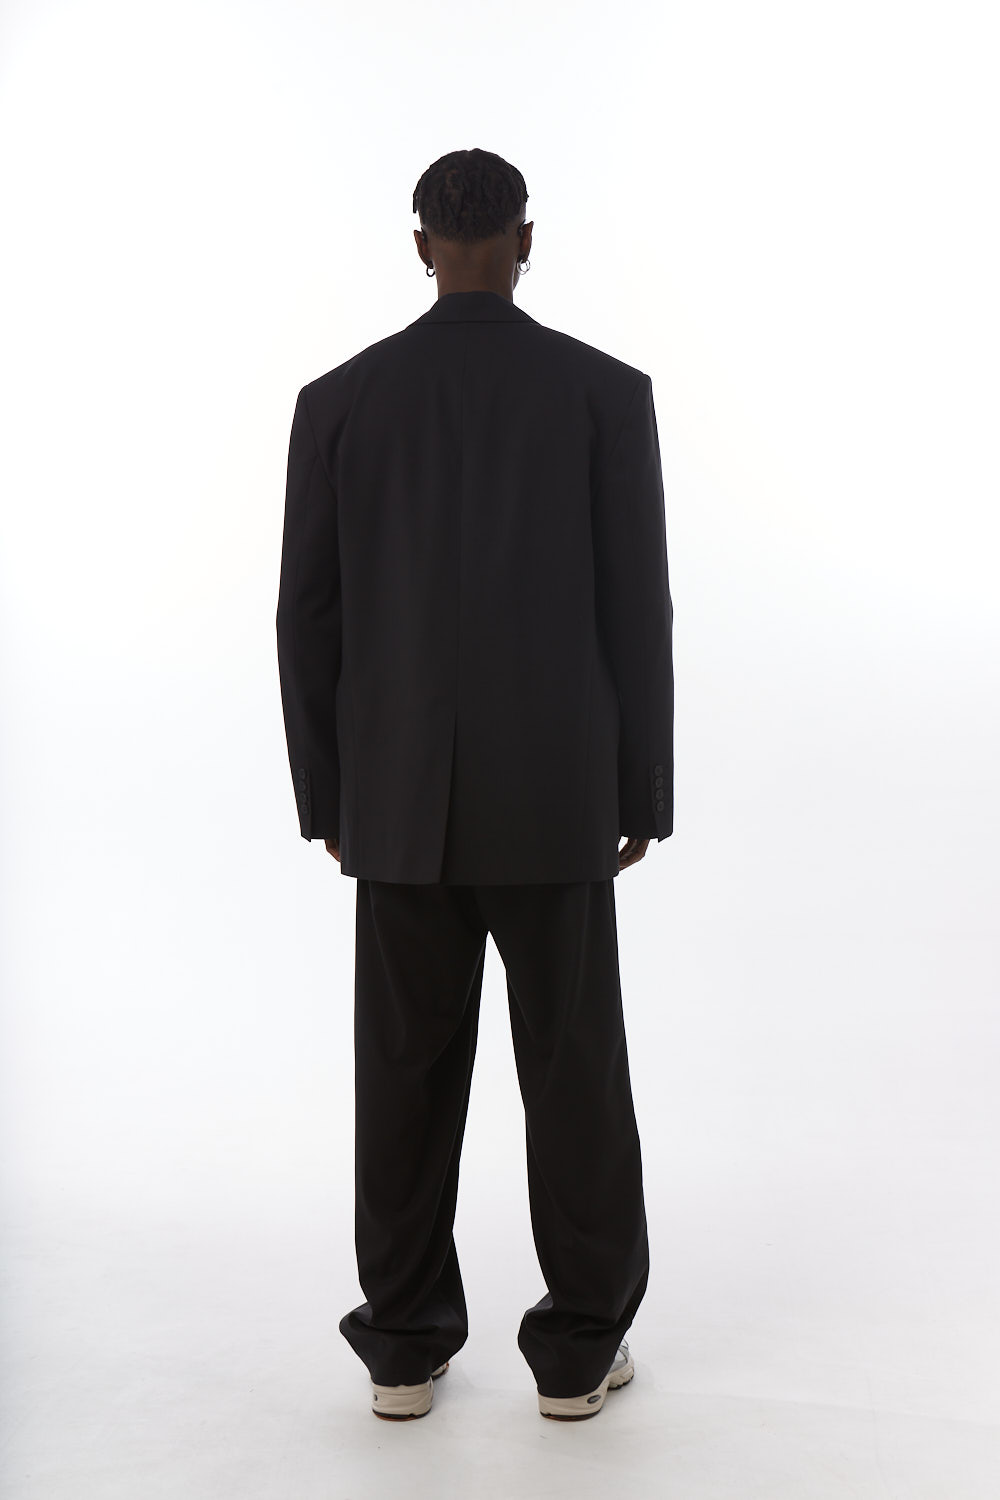 Пиджак мужской оверсайз, угольно-черный